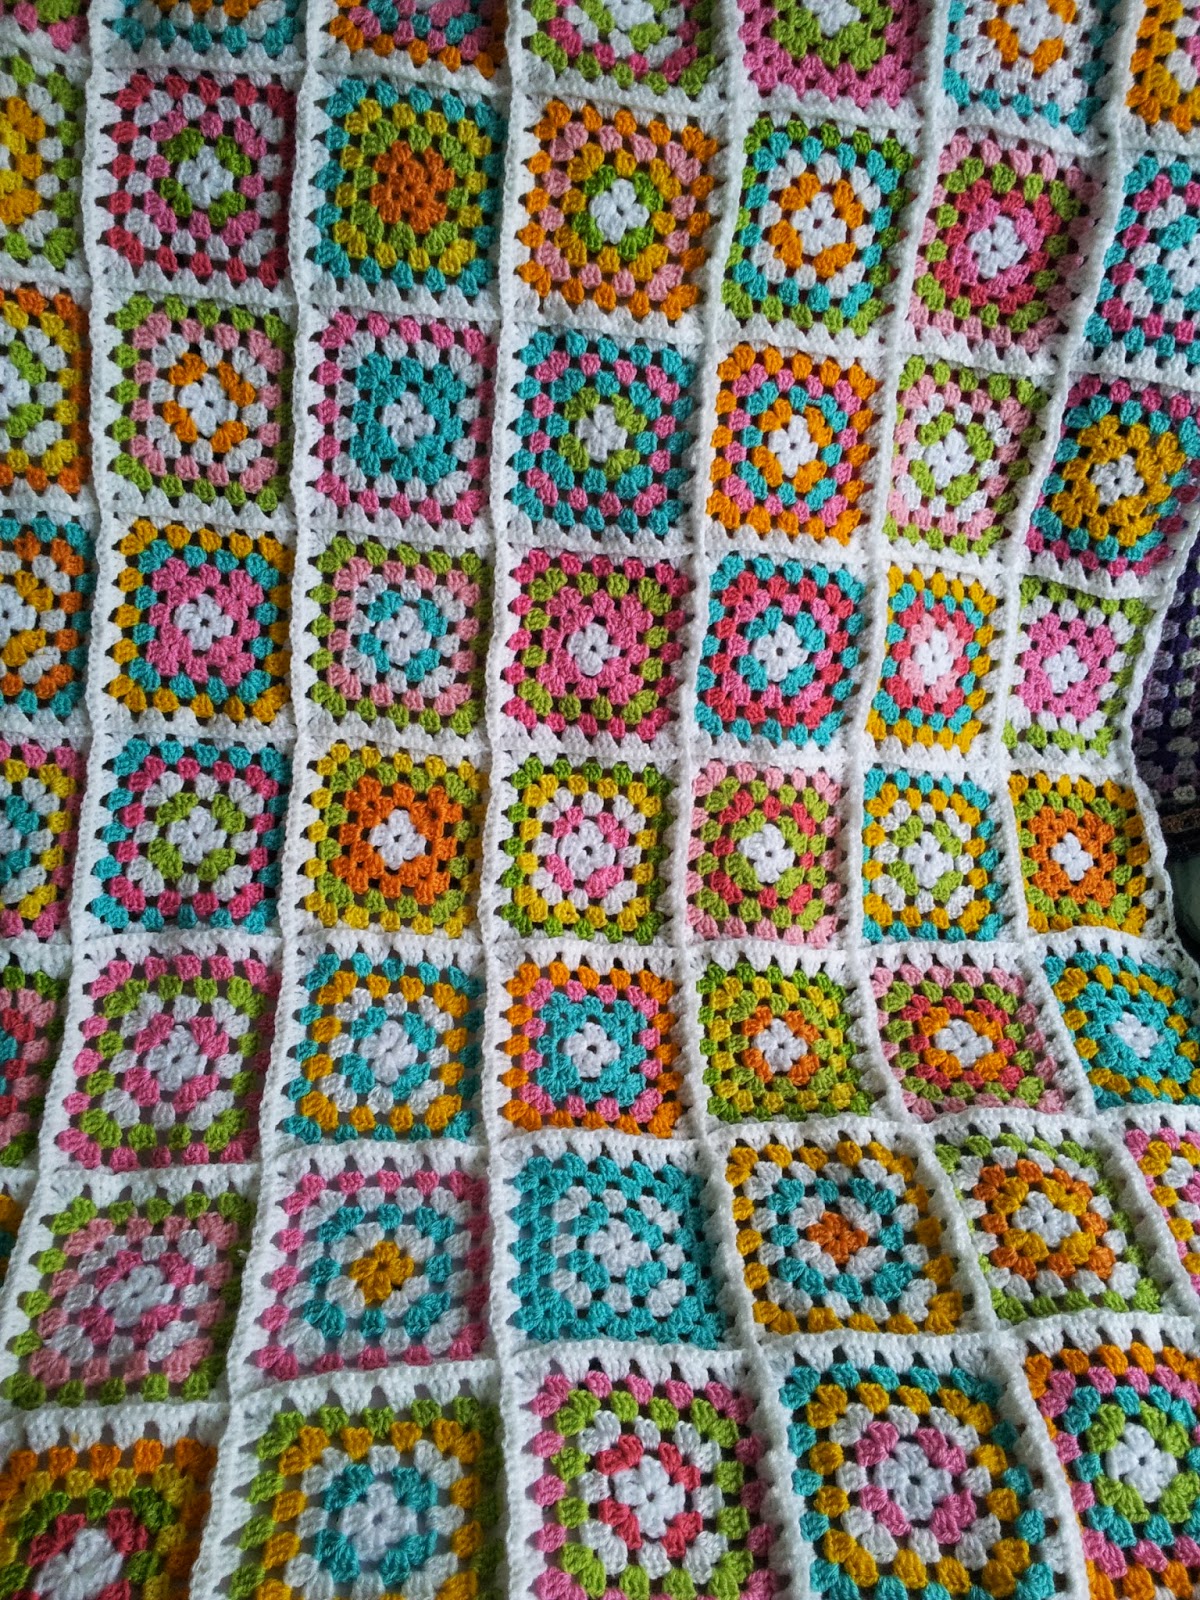 jean's muse: crochet blankets